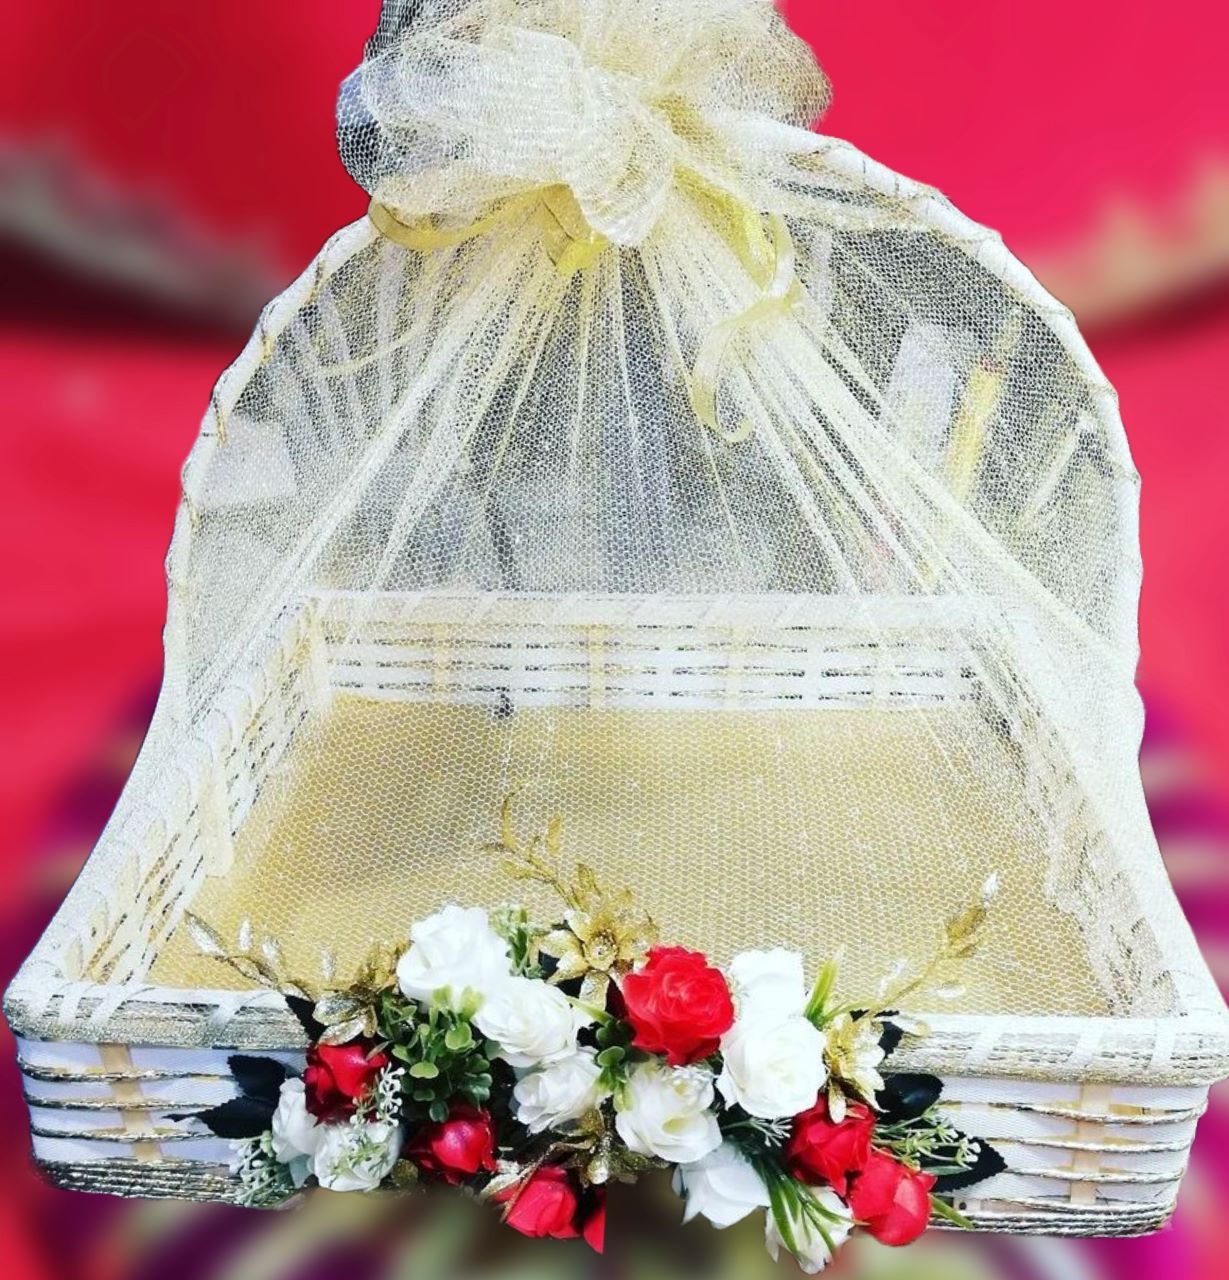 Wedding Gift Basket